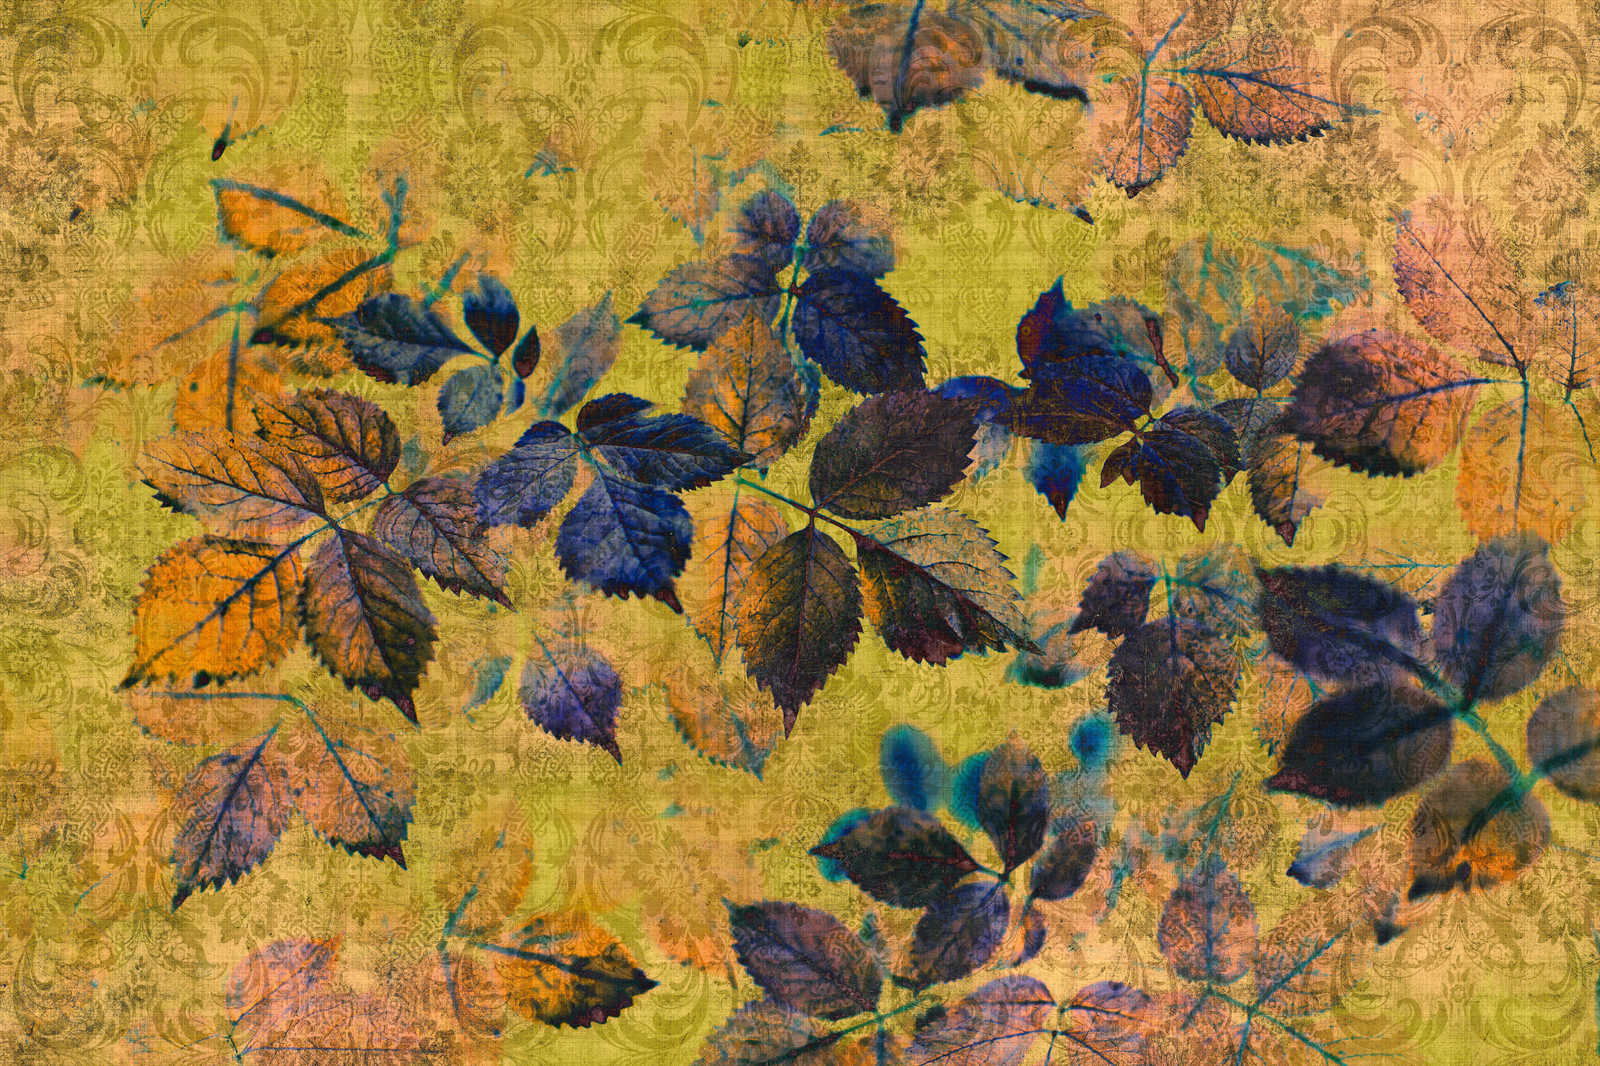             Indian summer 1 - Canvas schilderij met bladeren en ornamenten in natuurlijk linnen structuur - 0.90 m x 0.60 m
        